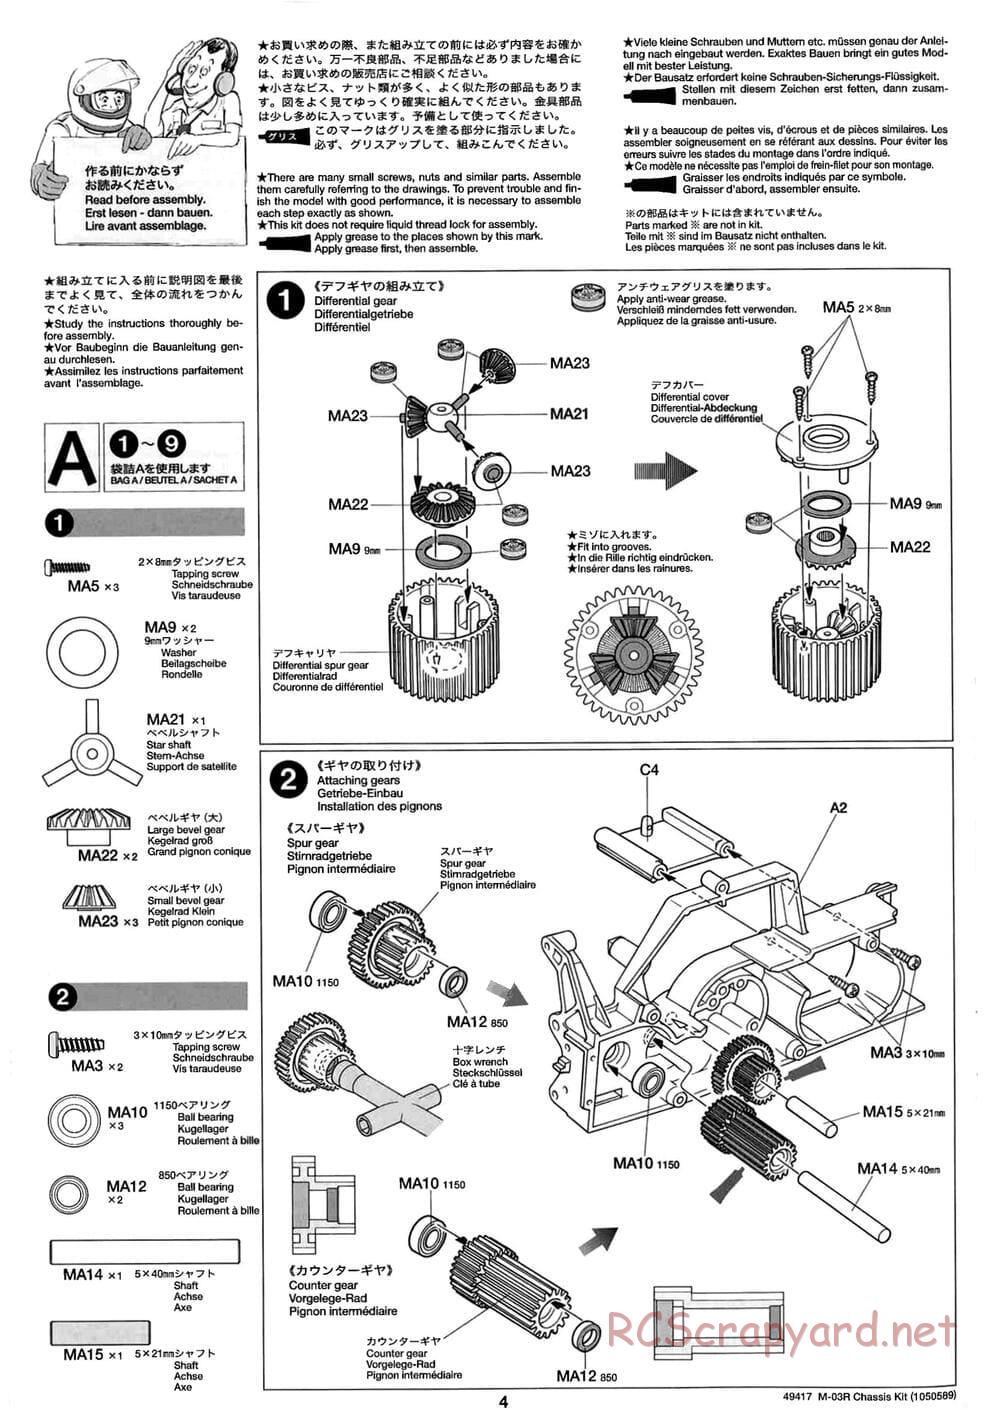 Tamiya - M-03R Chassis - Manual - Page 4